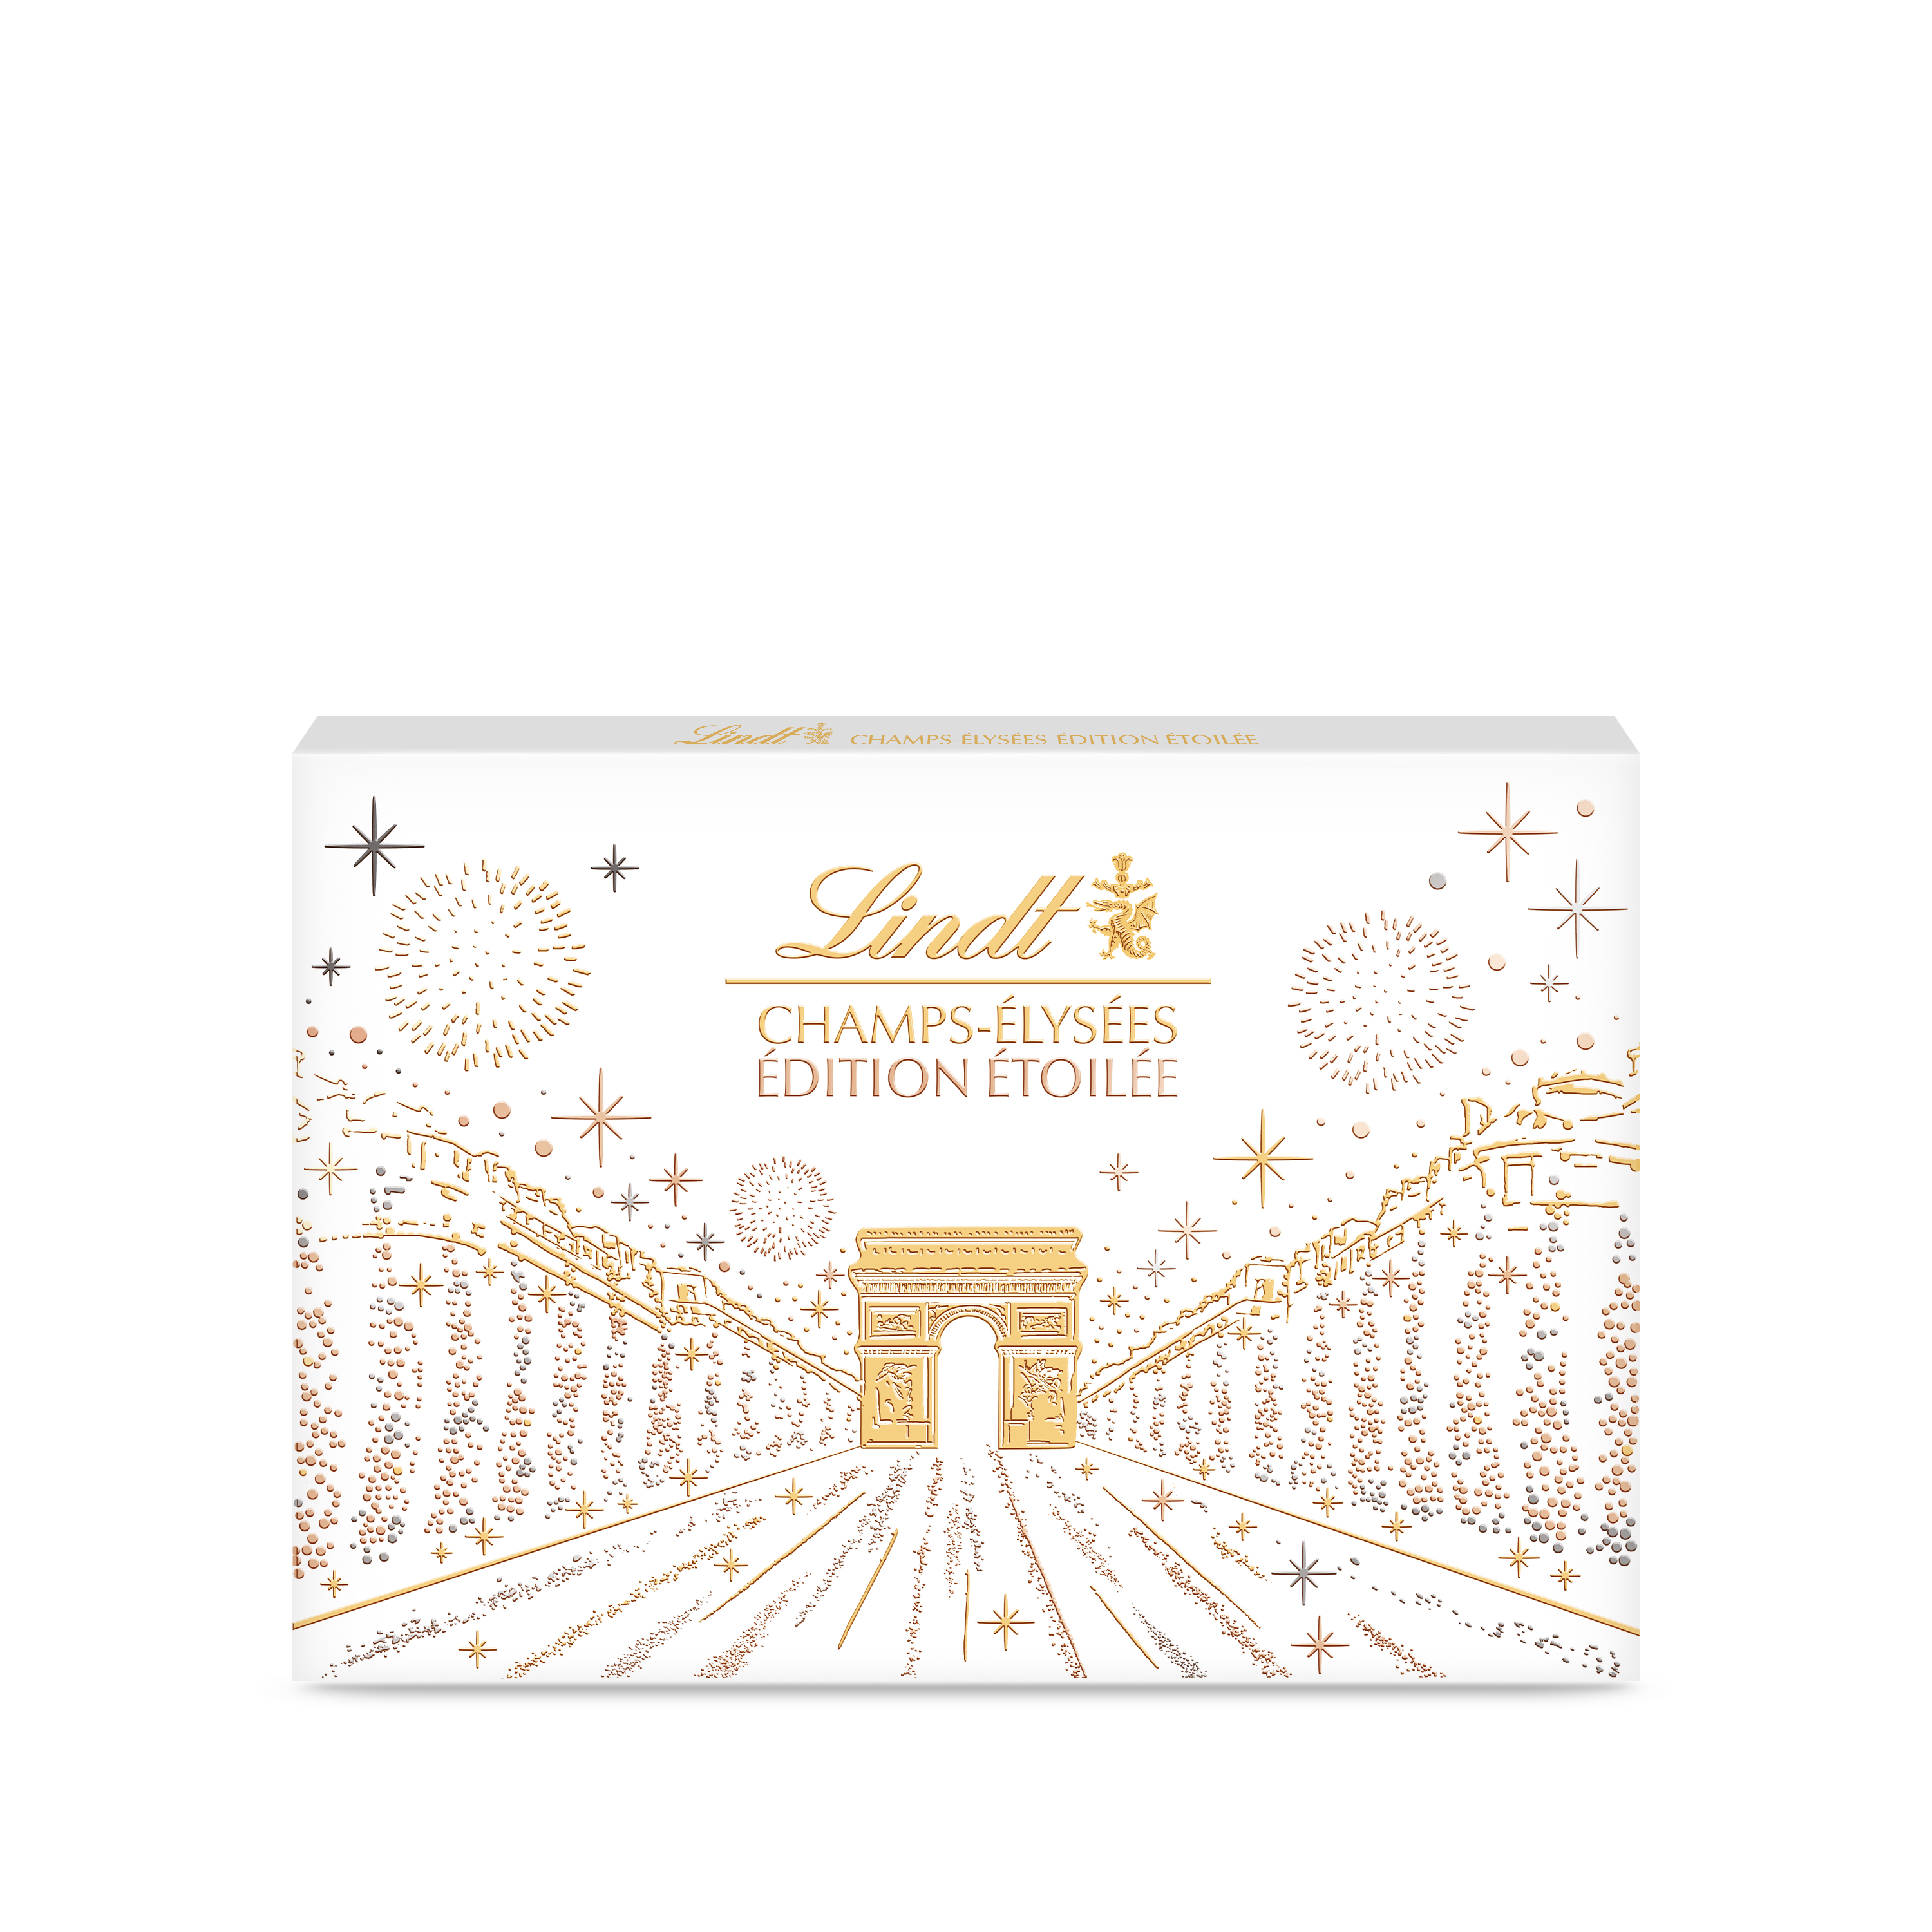 Assortiment chocolat Edition étoilée Champs-Elysée LINDT : la